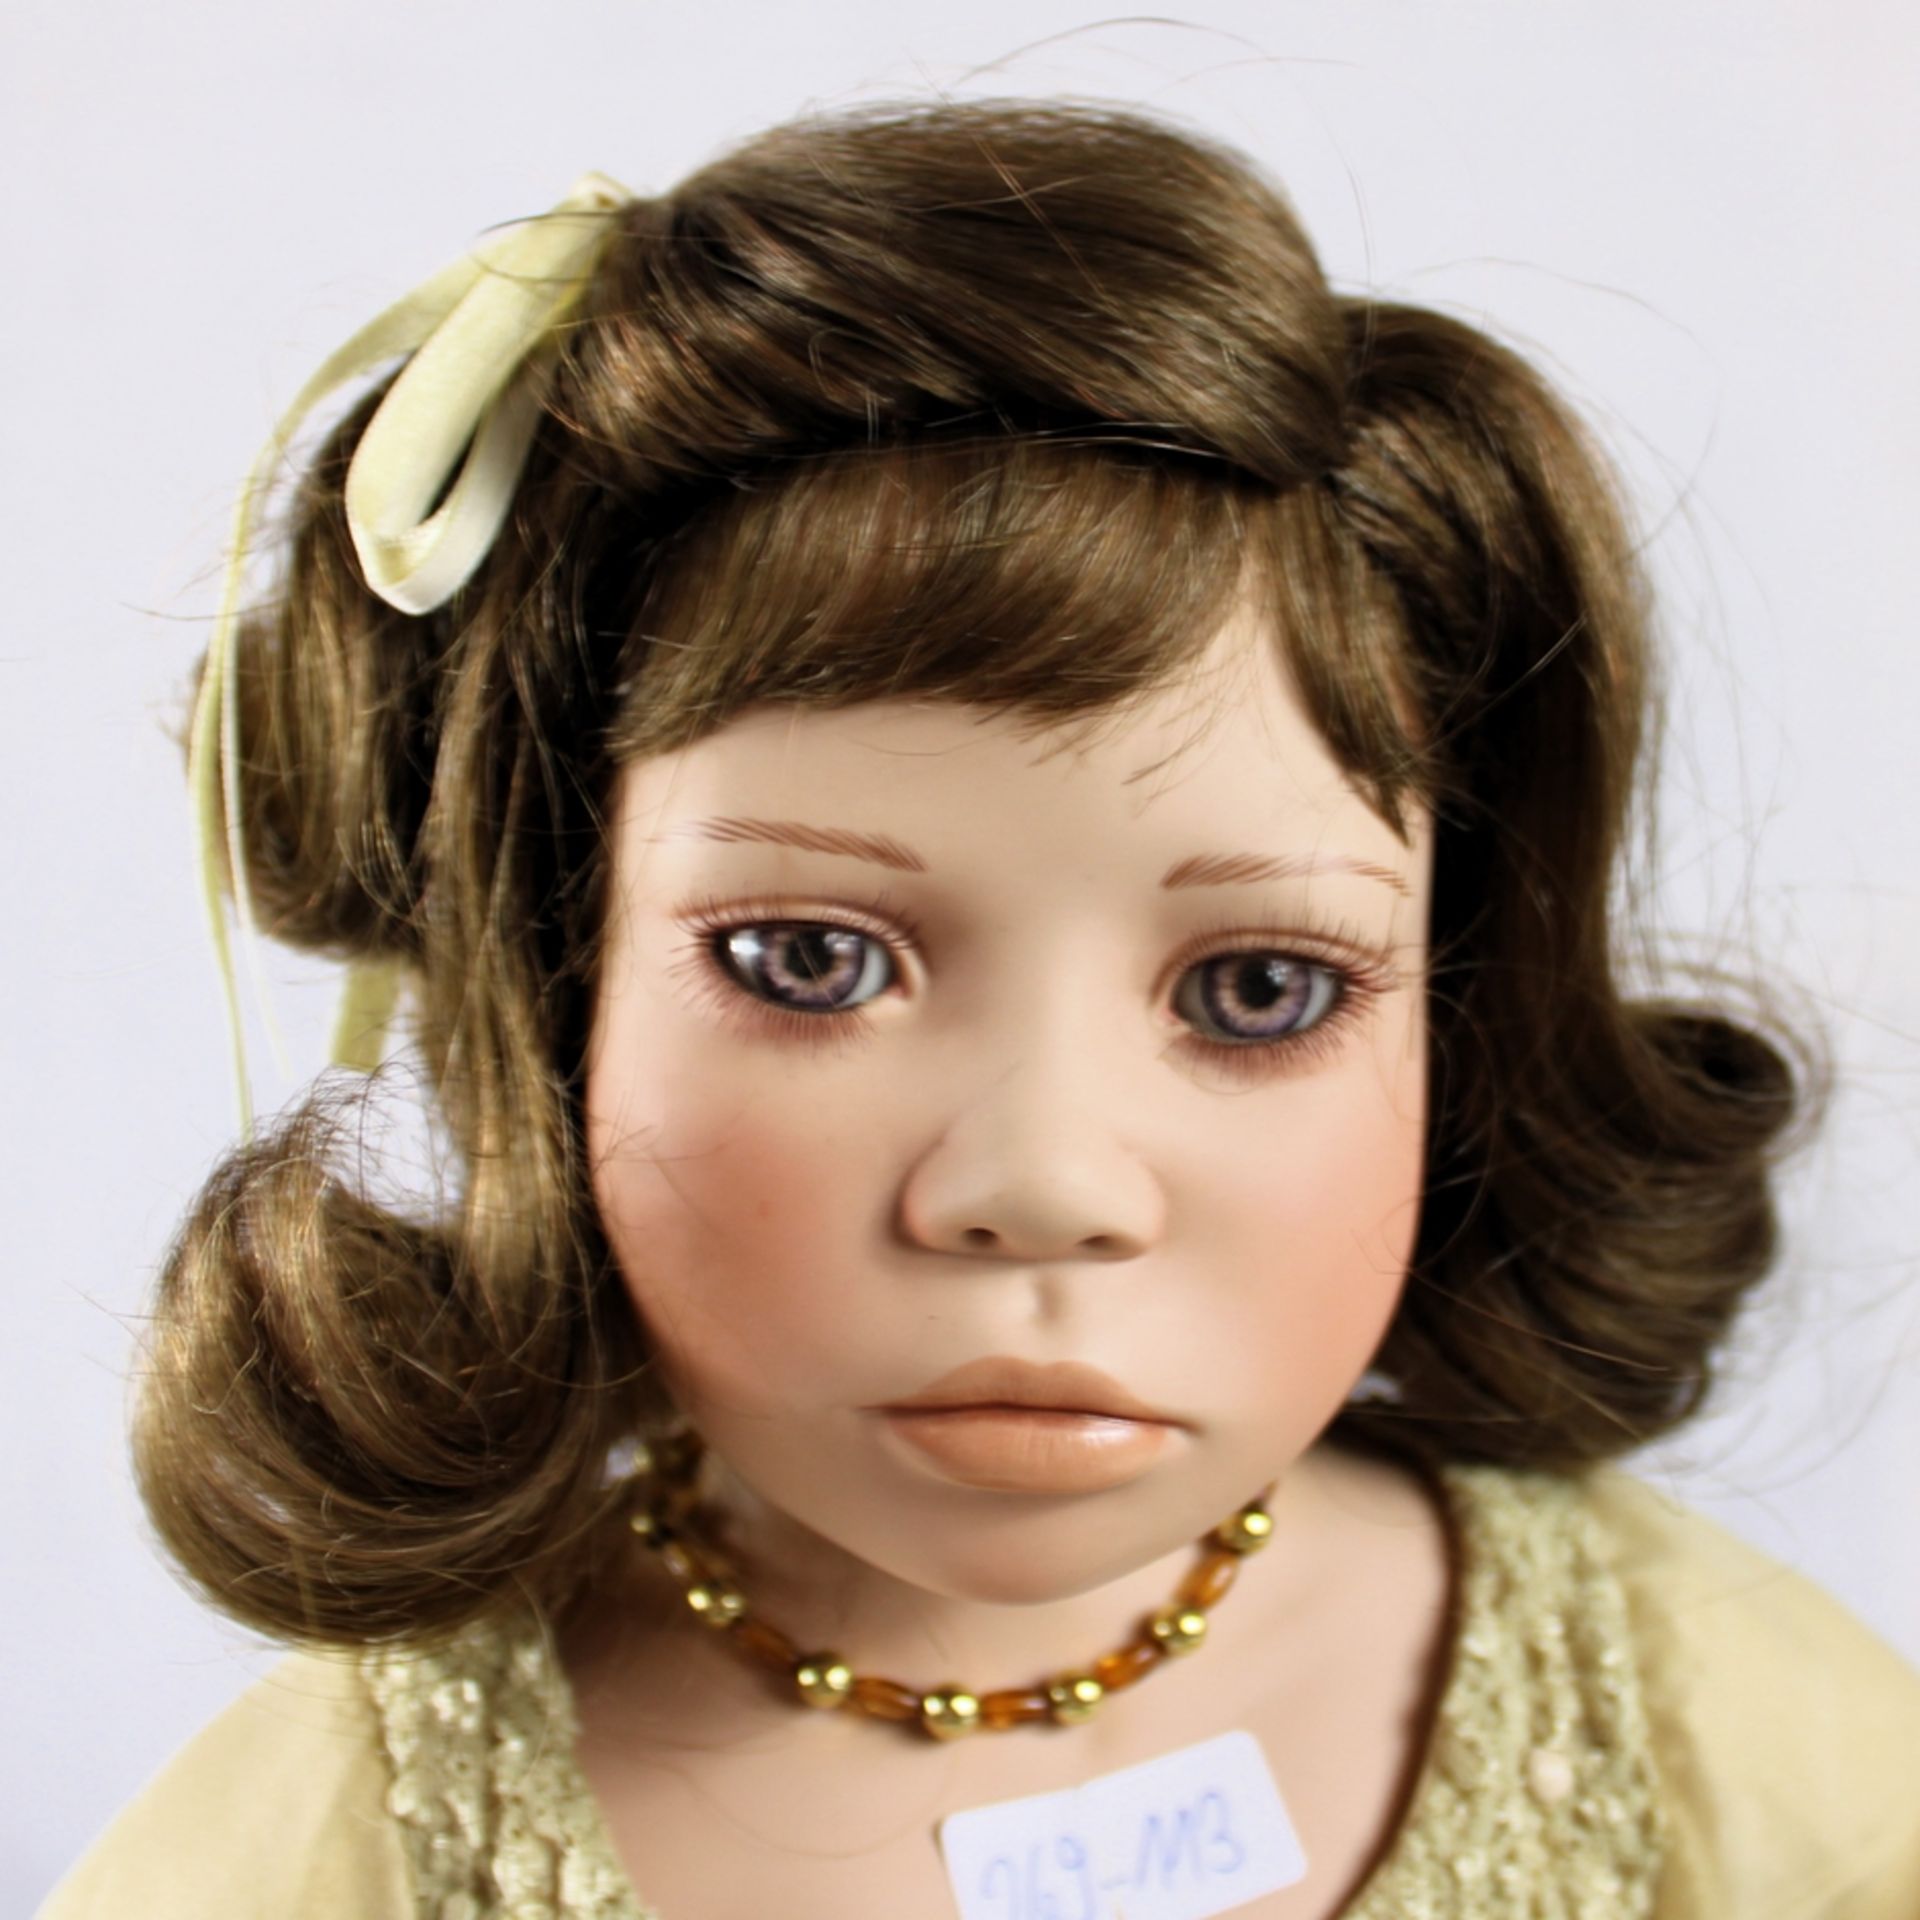 Christine Orange Porzellan Puppe ca. 68 cm limitiert a. 1000 St. - Bild 2 aus 2